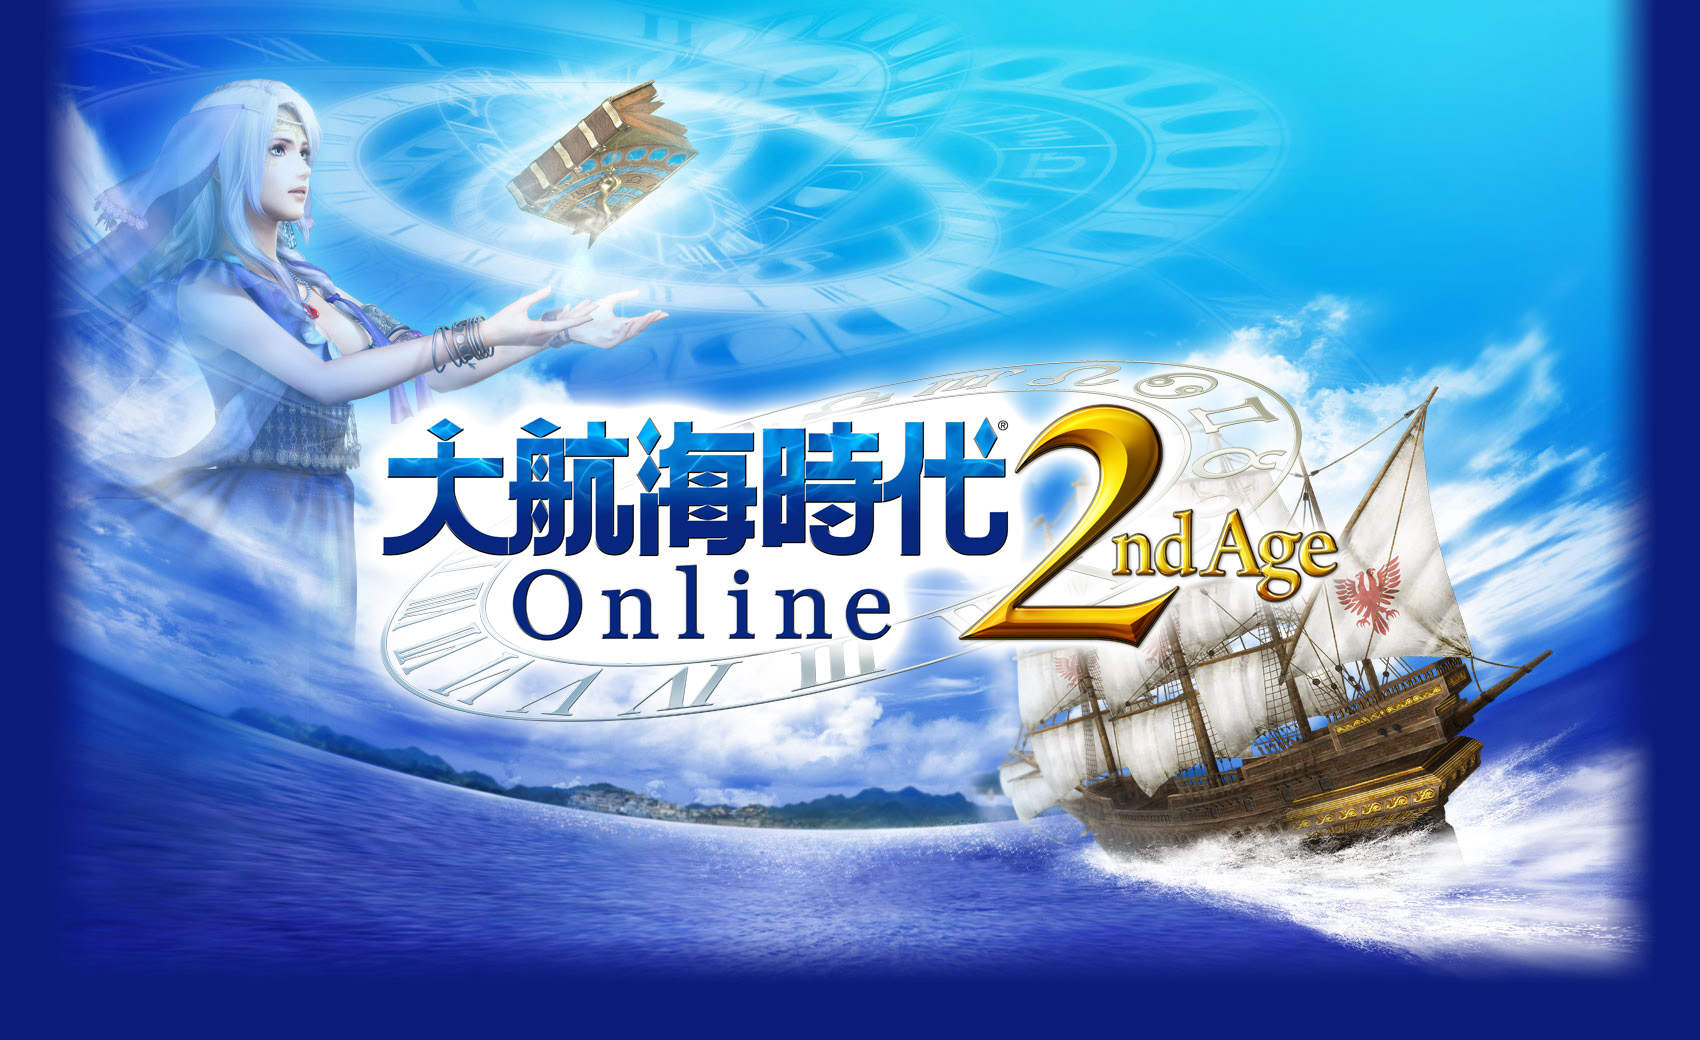 大航海時代Online》「2nd Age」 改版預定31 日推出- 巴哈姆特